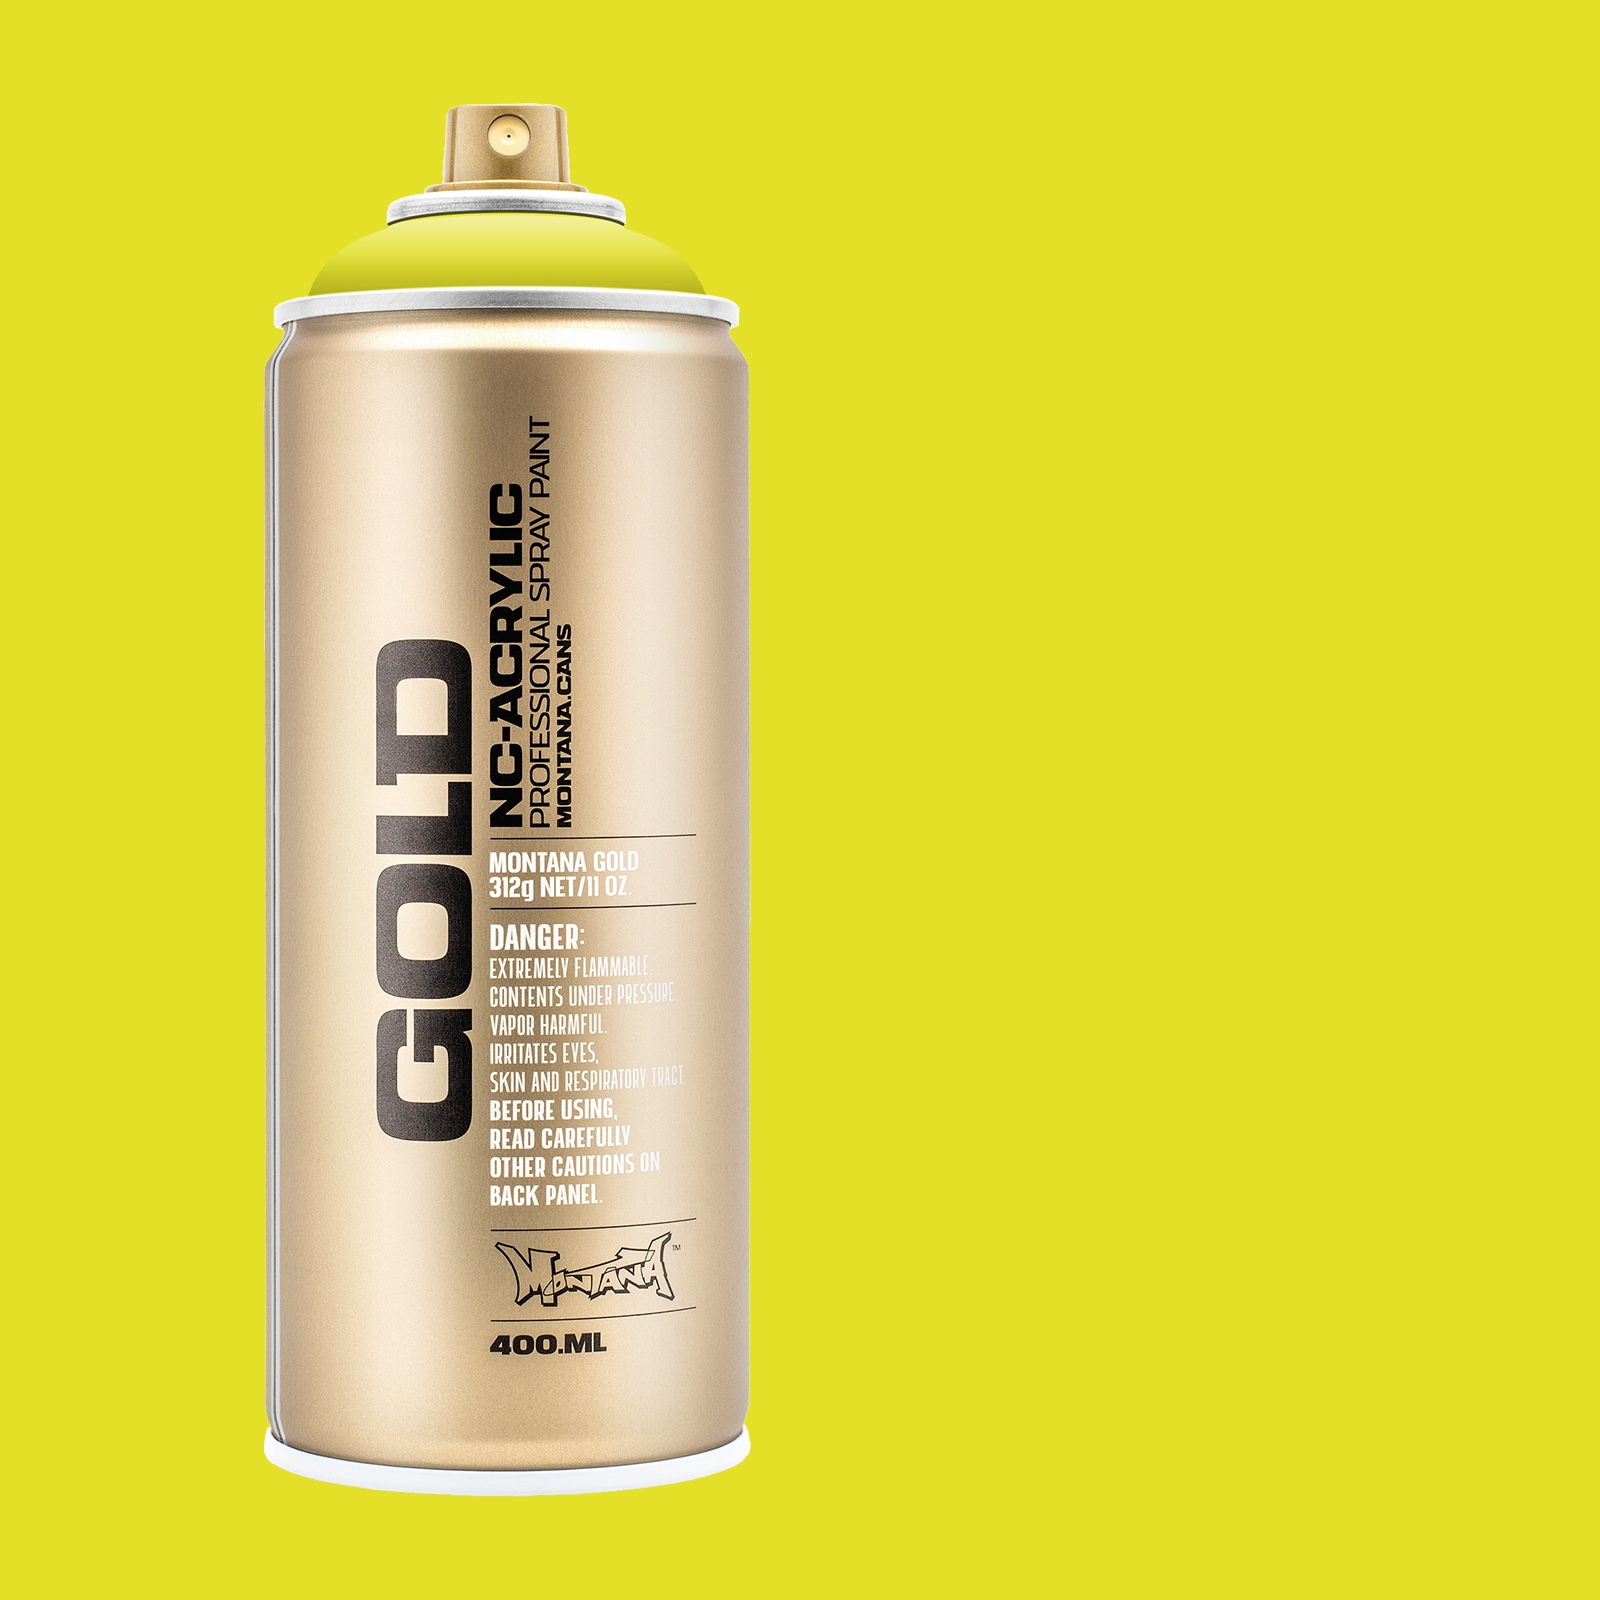 Krylon UV Resistant Acrylic Coating Spray 11 Ounces Clear 1305 (2-Pack)2